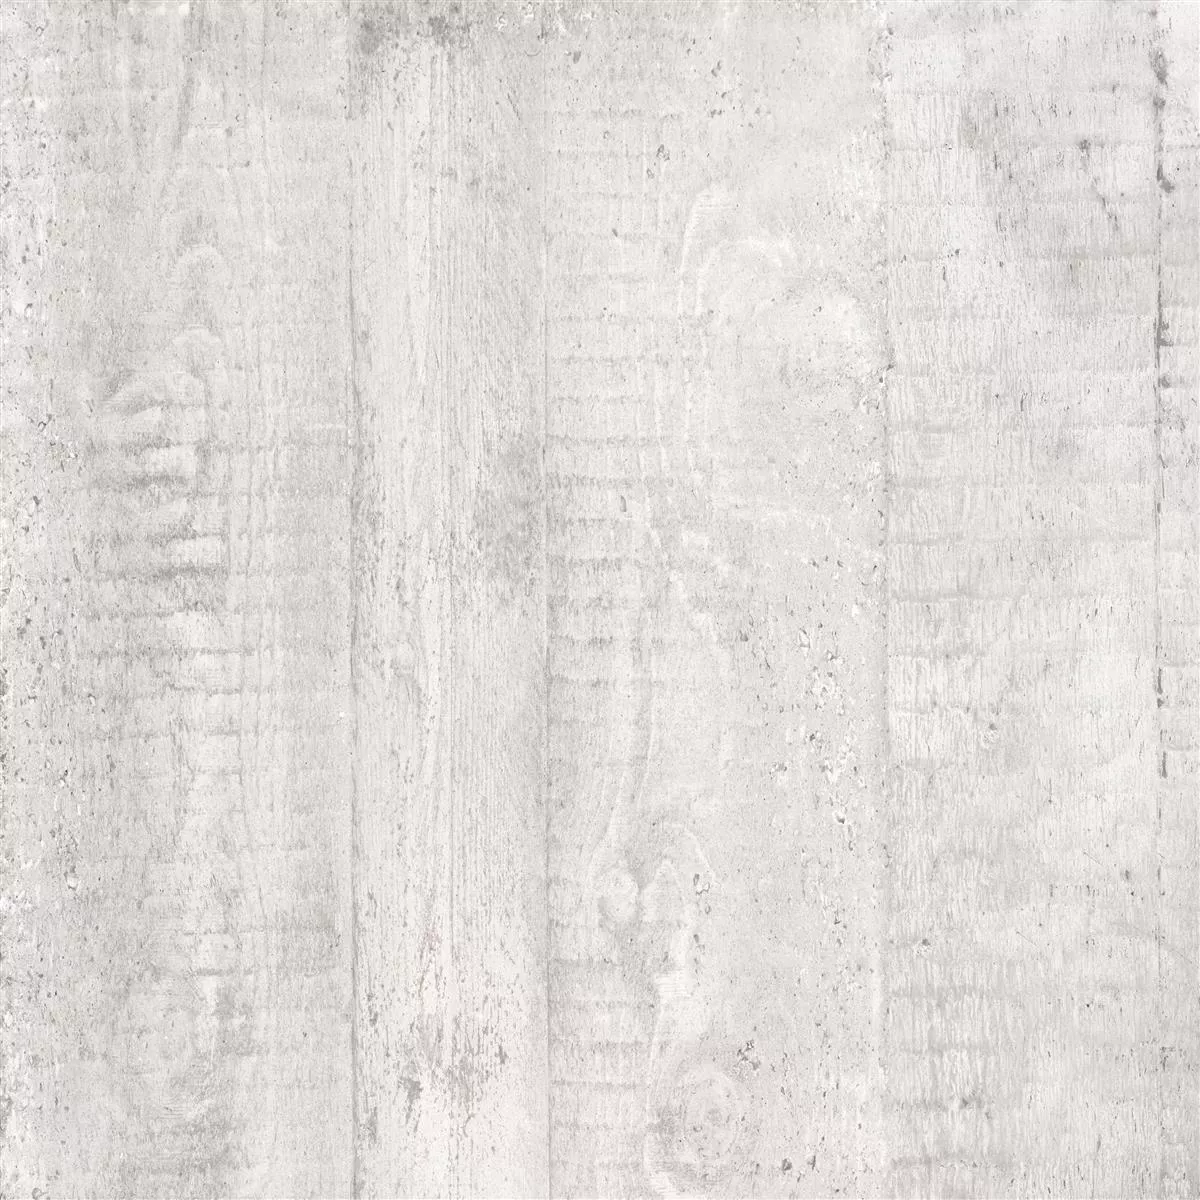 Podlahové Dlaždice Gorki Dřevěný Vzhled 60x60cm Glazovaný Bílá